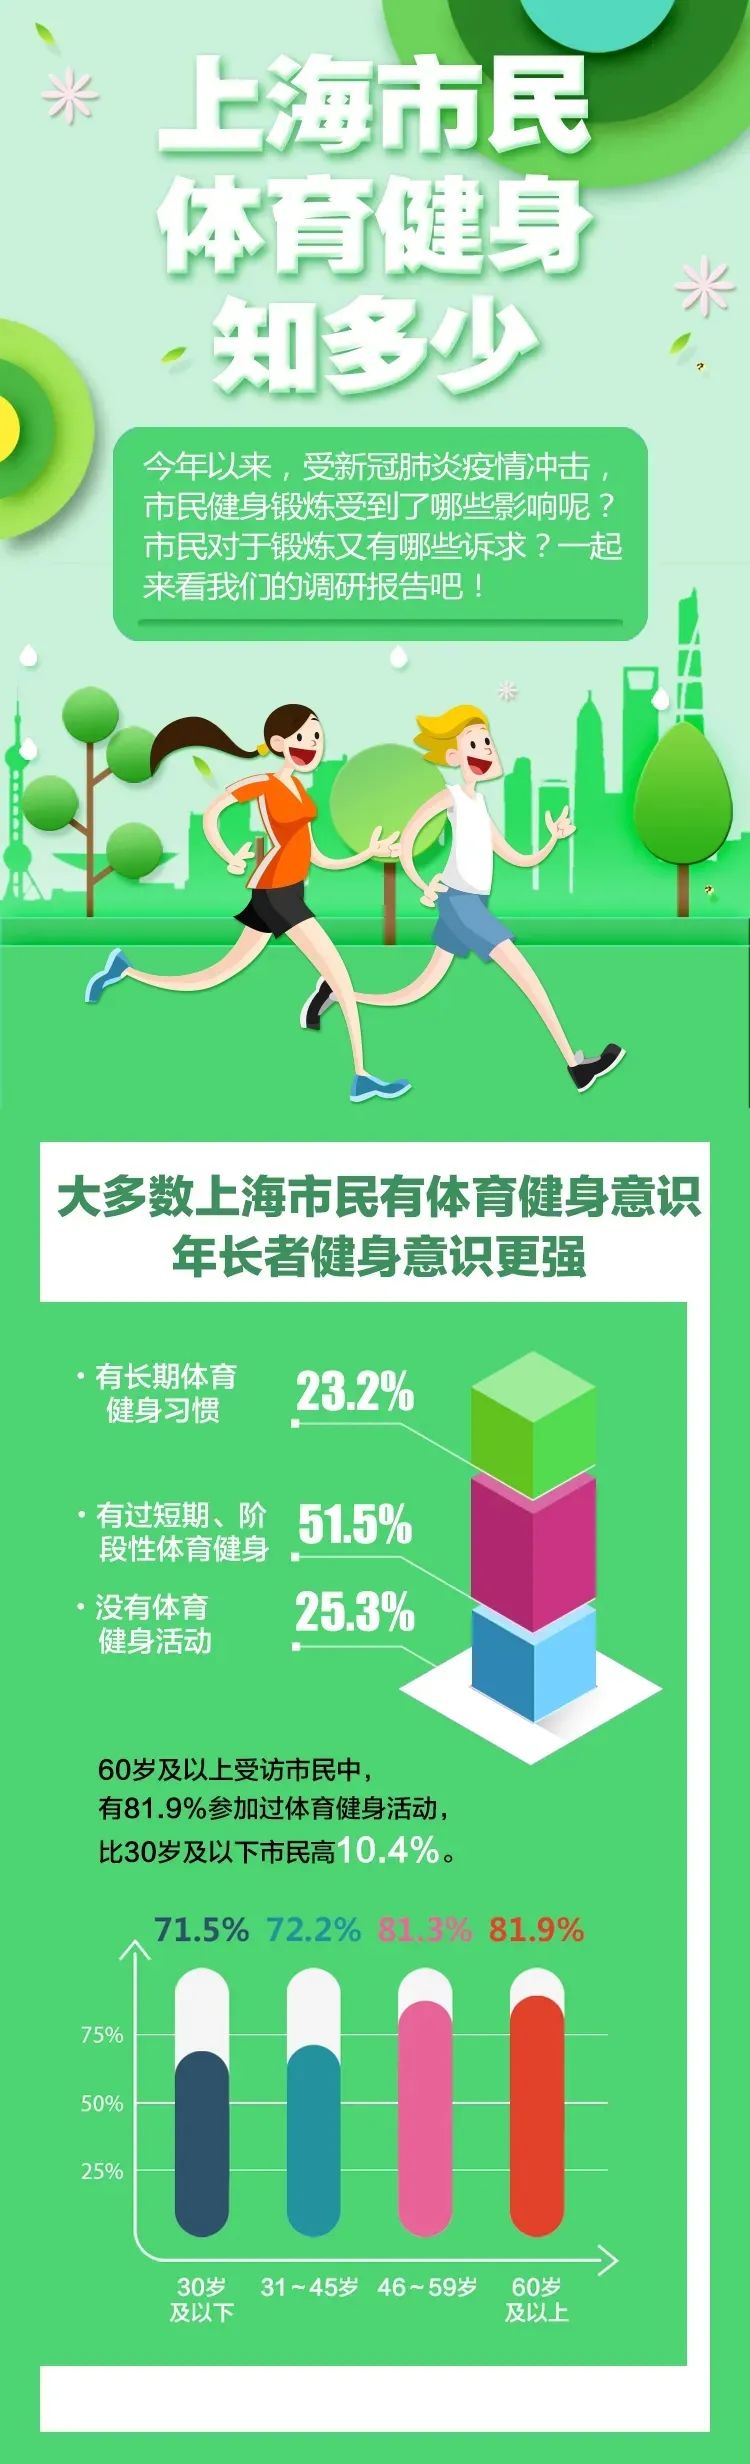 北京所有健身场所50%限流开放，上海七成锻炼者每周健身3次以上